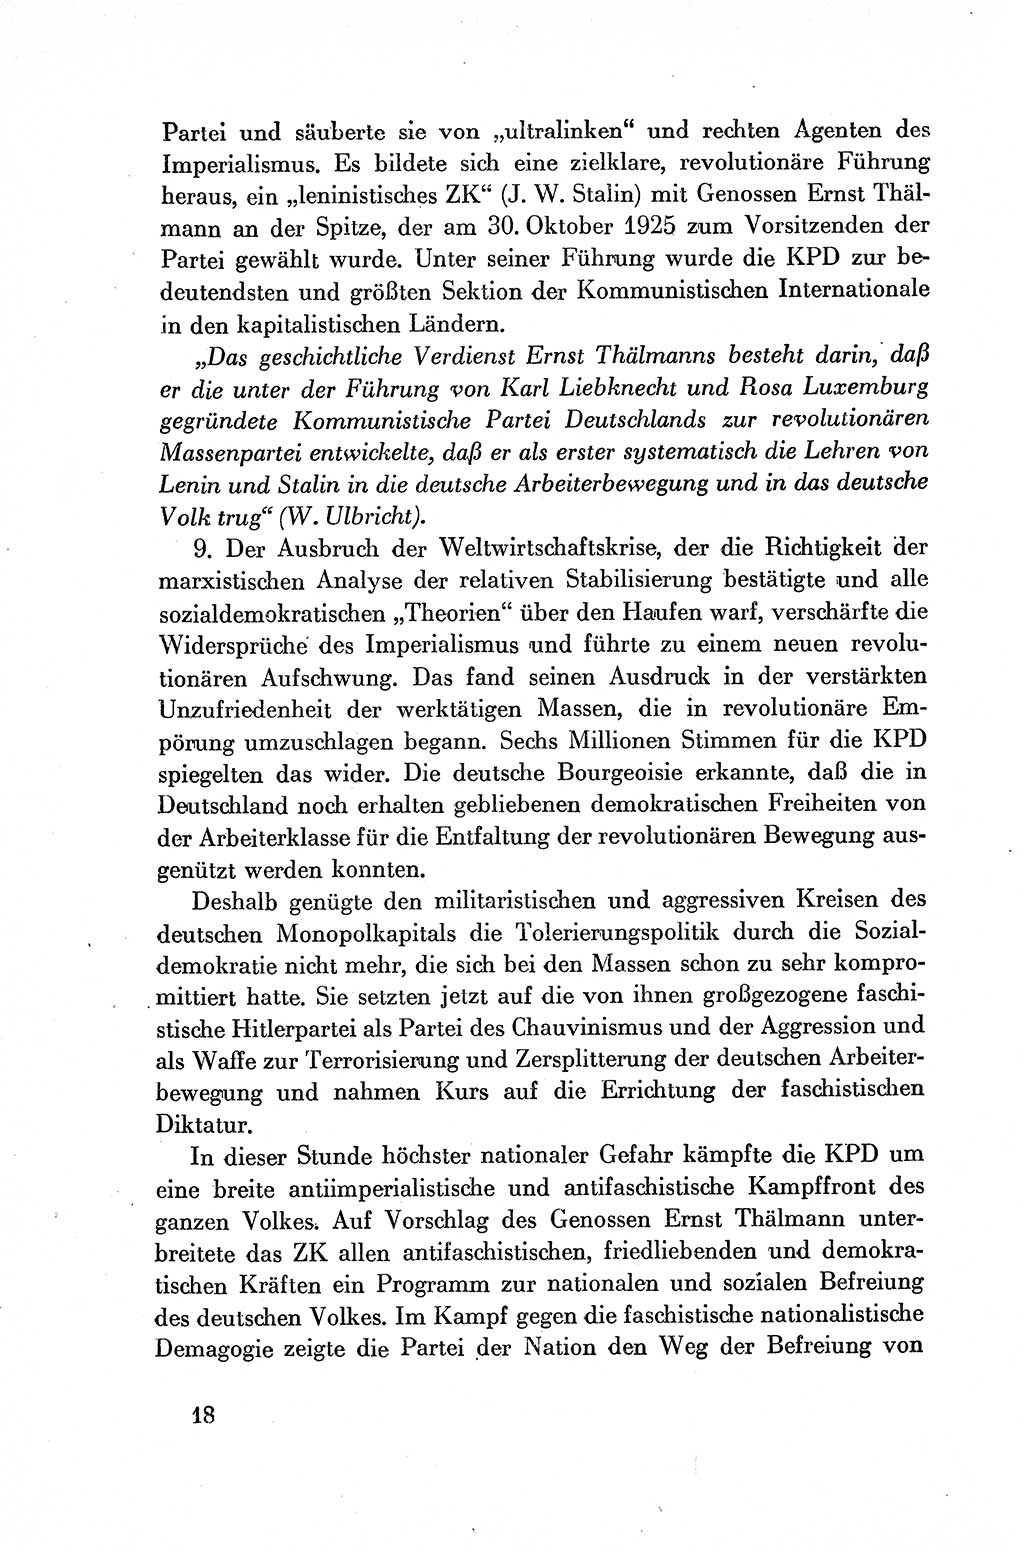 Dokumente der Sozialistischen Einheitspartei Deutschlands (SED) [Deutsche Demokratische Republik (DDR)] 1954-1955, Seite 18 (Dok. SED DDR 1954-1955, S. 18)